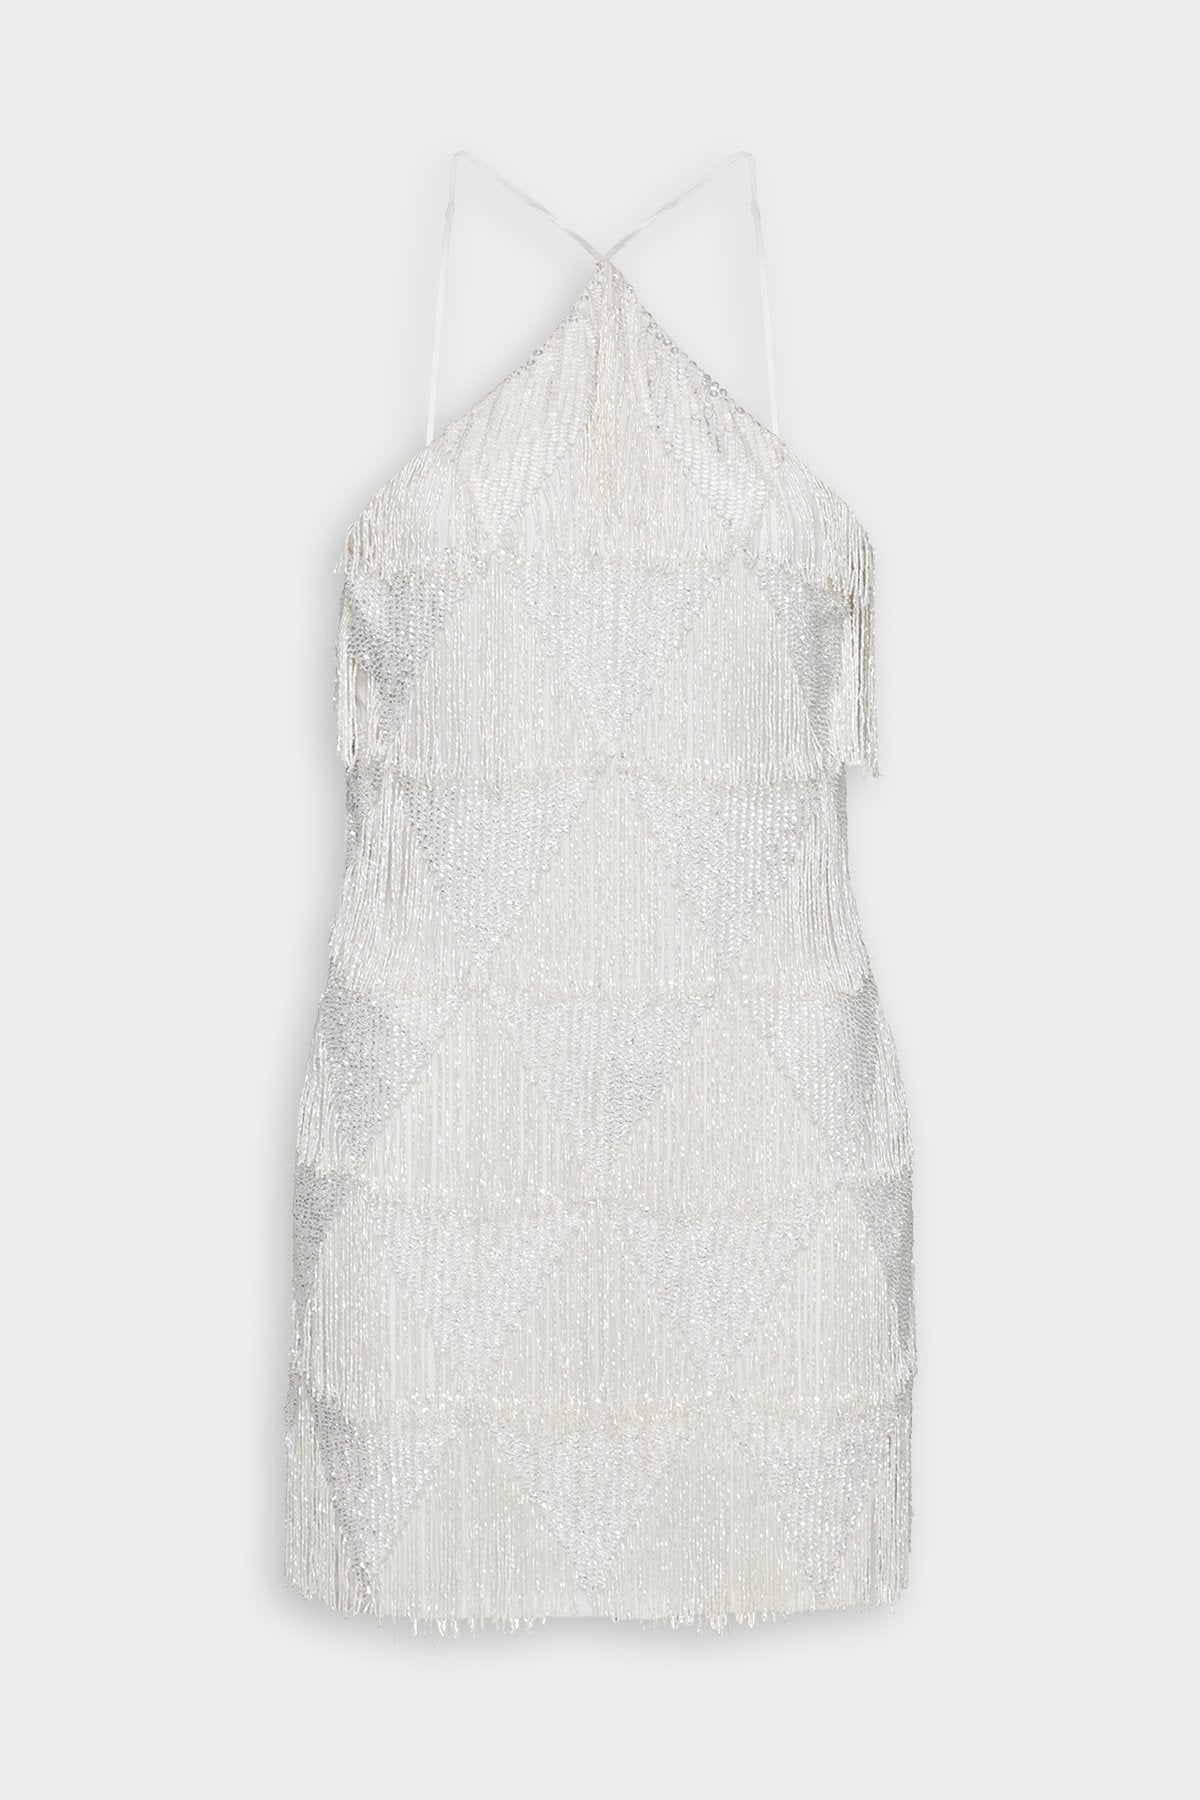 Clover Dress in White Fringe - shop-olivia.com